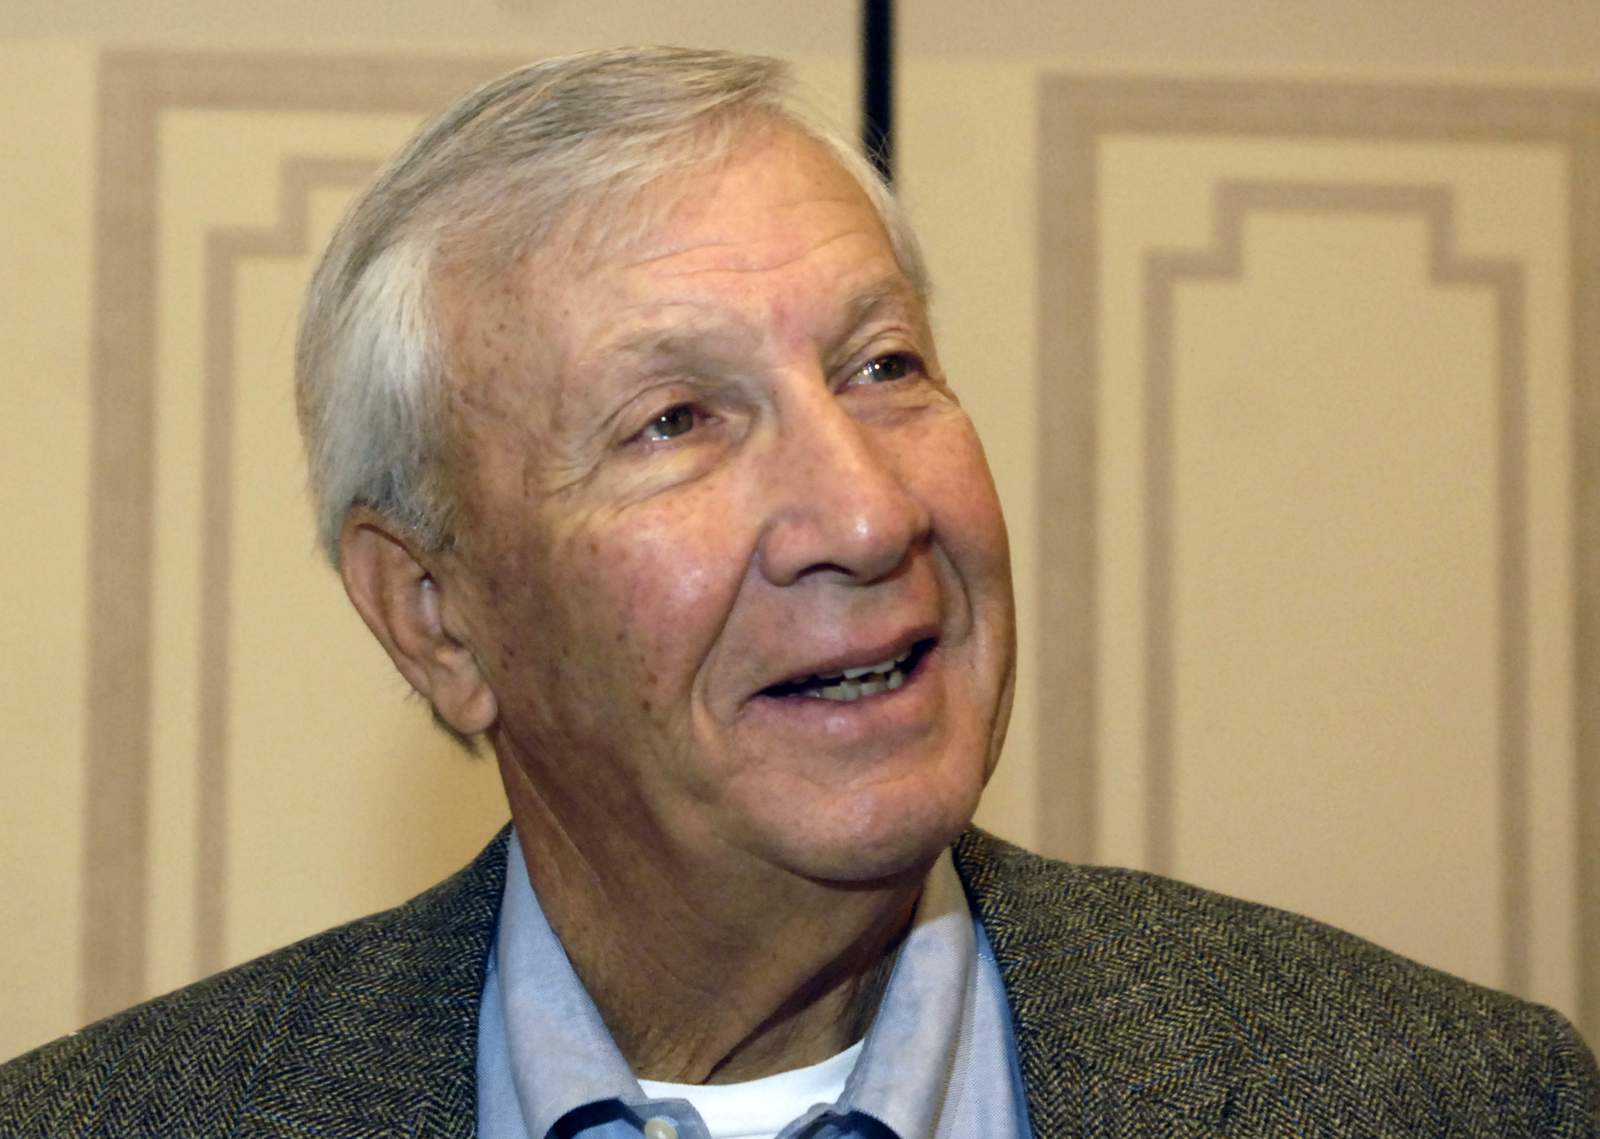 Former Auburn football coach Pat Dye dies at 80